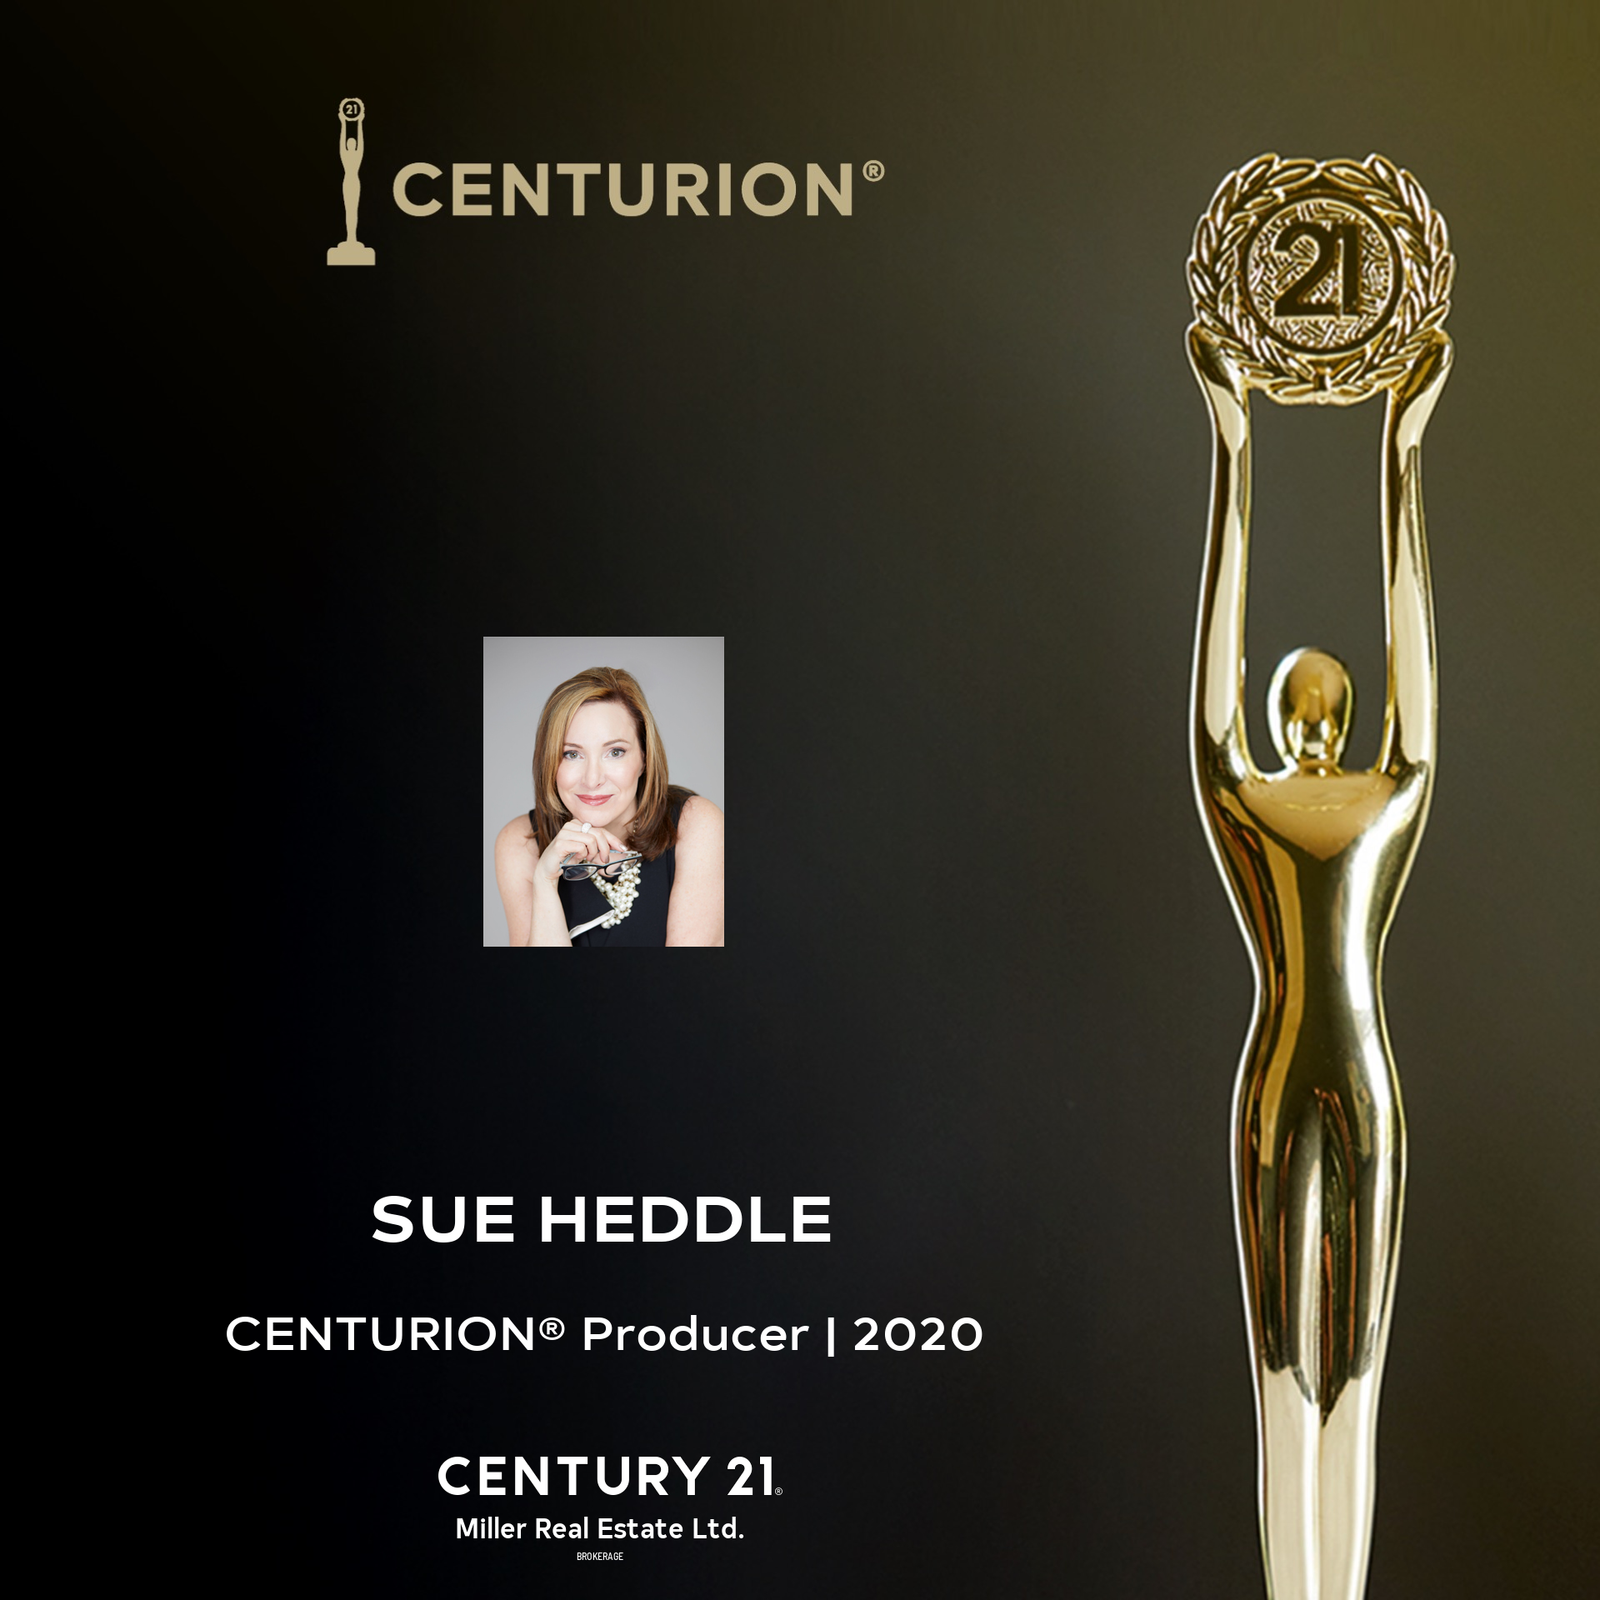 Oakville Realtor Sue Heddle - A 2020 Centurion Producer